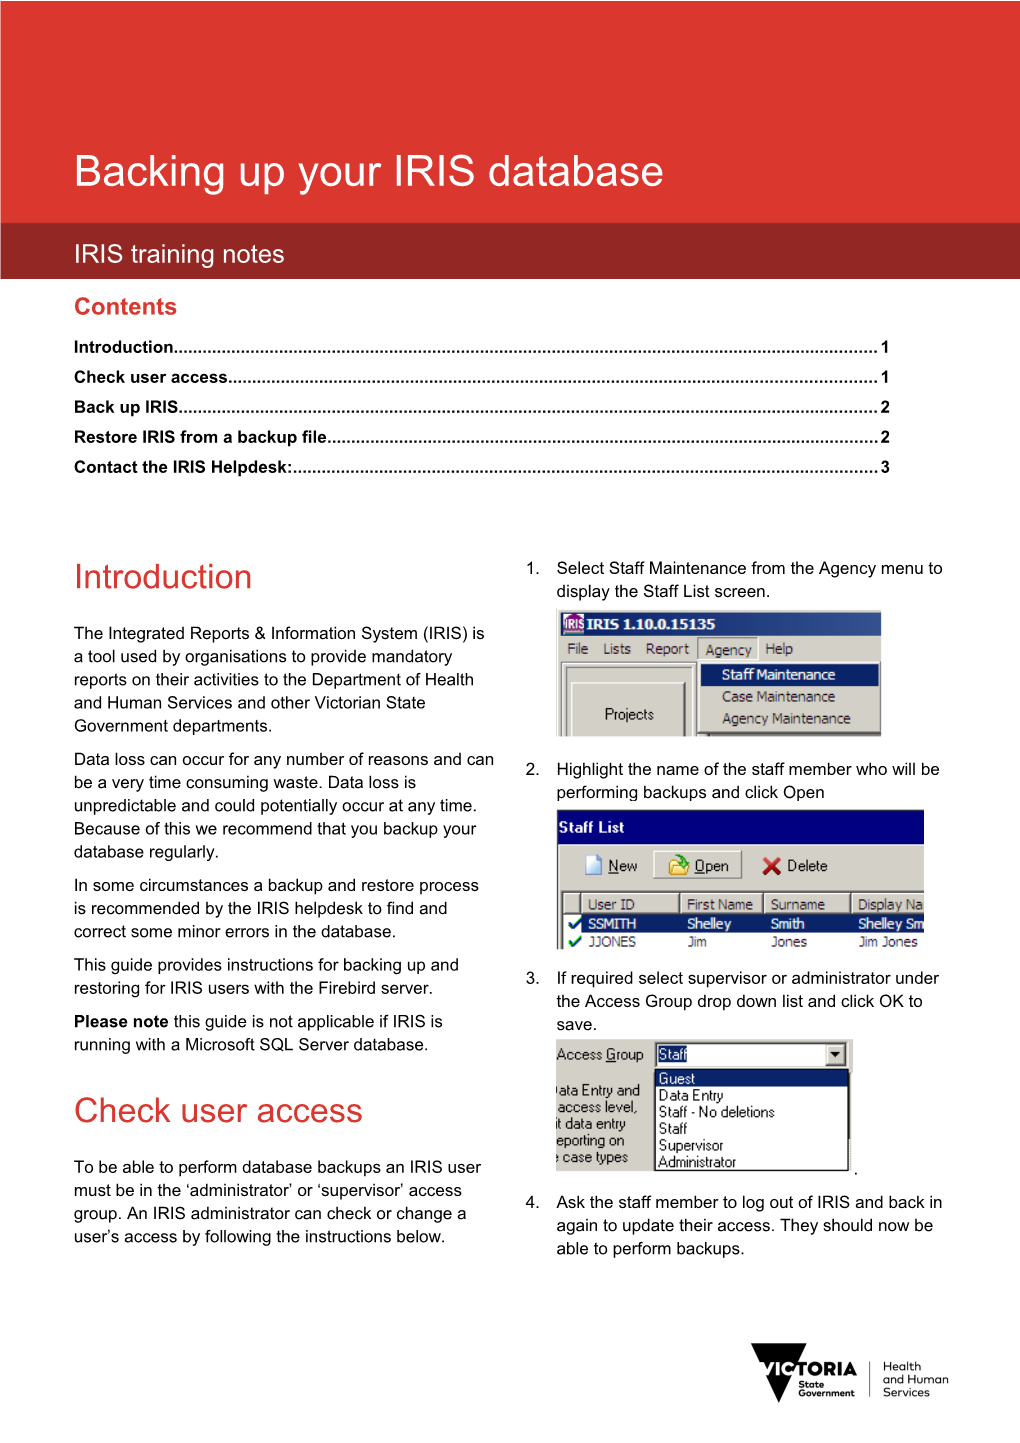 IRIS Training Notes - Back up Your IRIS Database